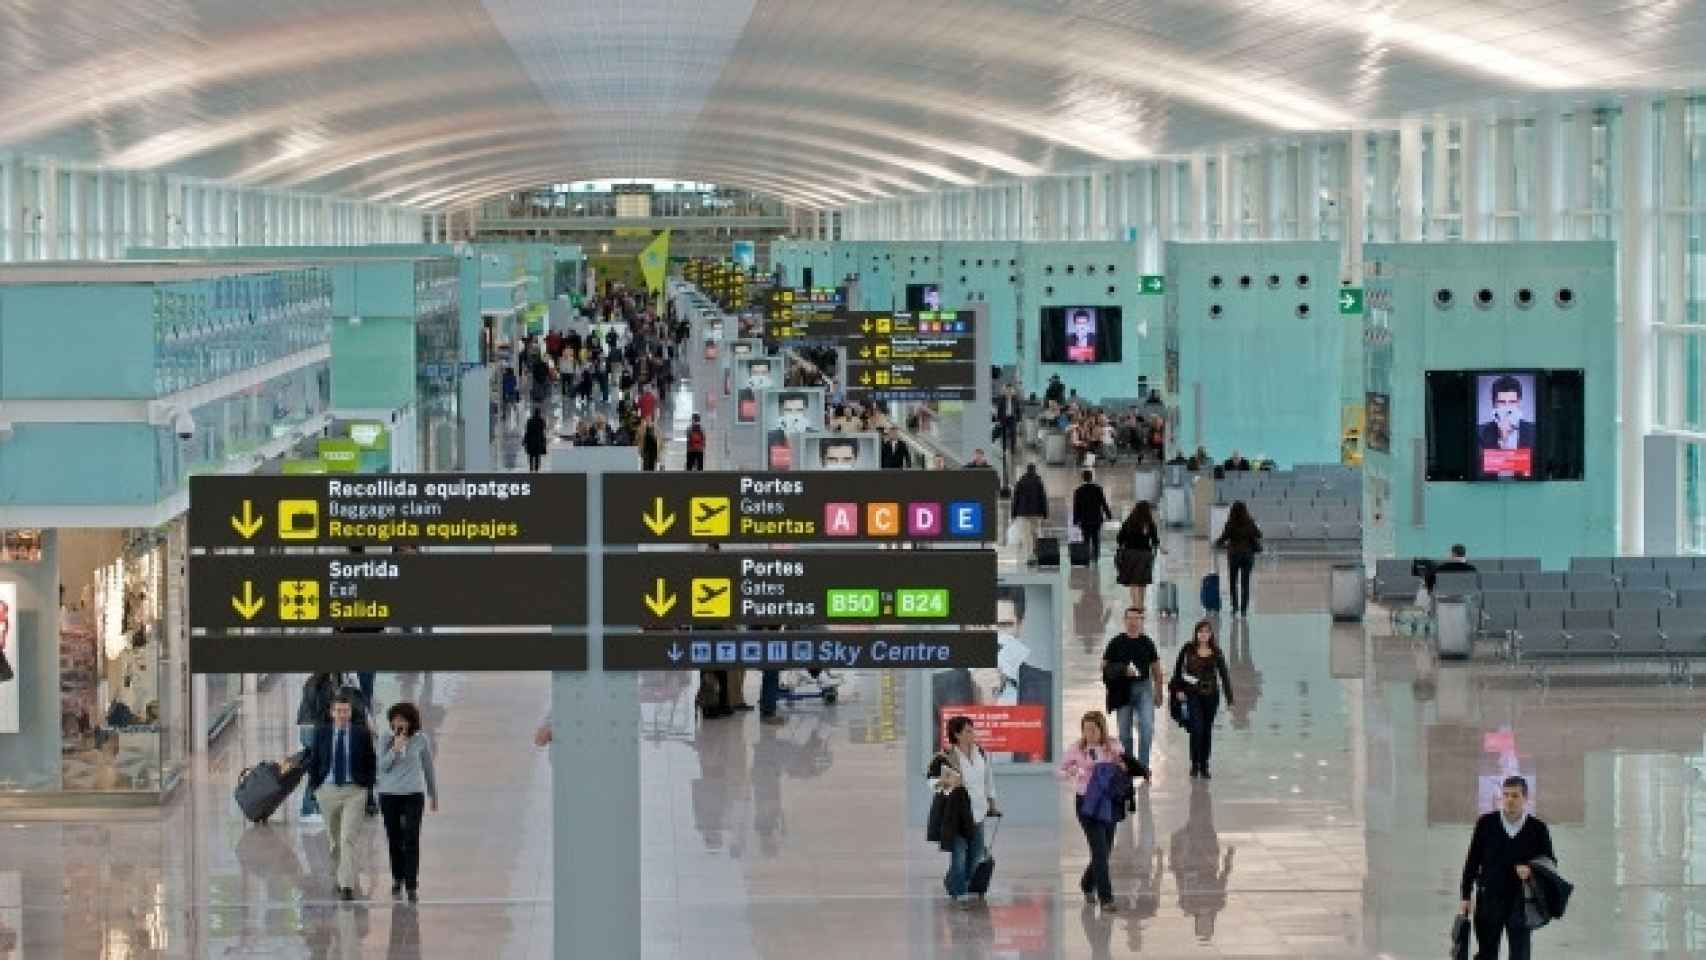 El Aeropuerto de Barcelona-El Prat se ha despertado este viernes con relativa normalidad en el control de seguridad / CG